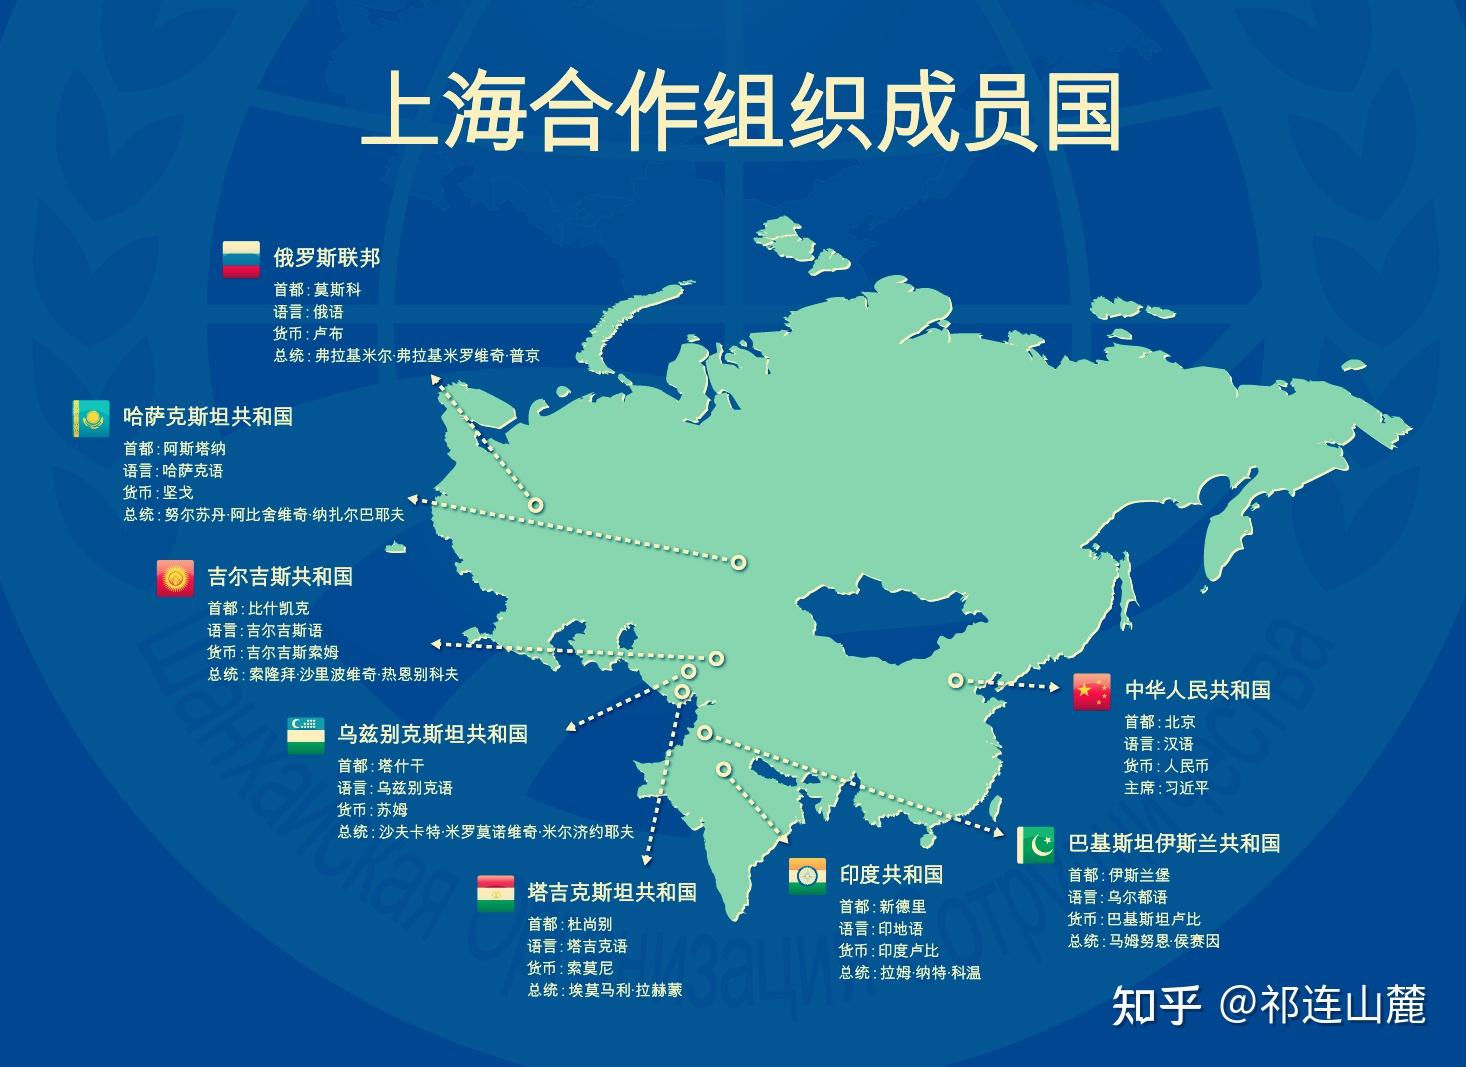 兰州大学举办"上海合作组织成立二十周年回顾与展望"